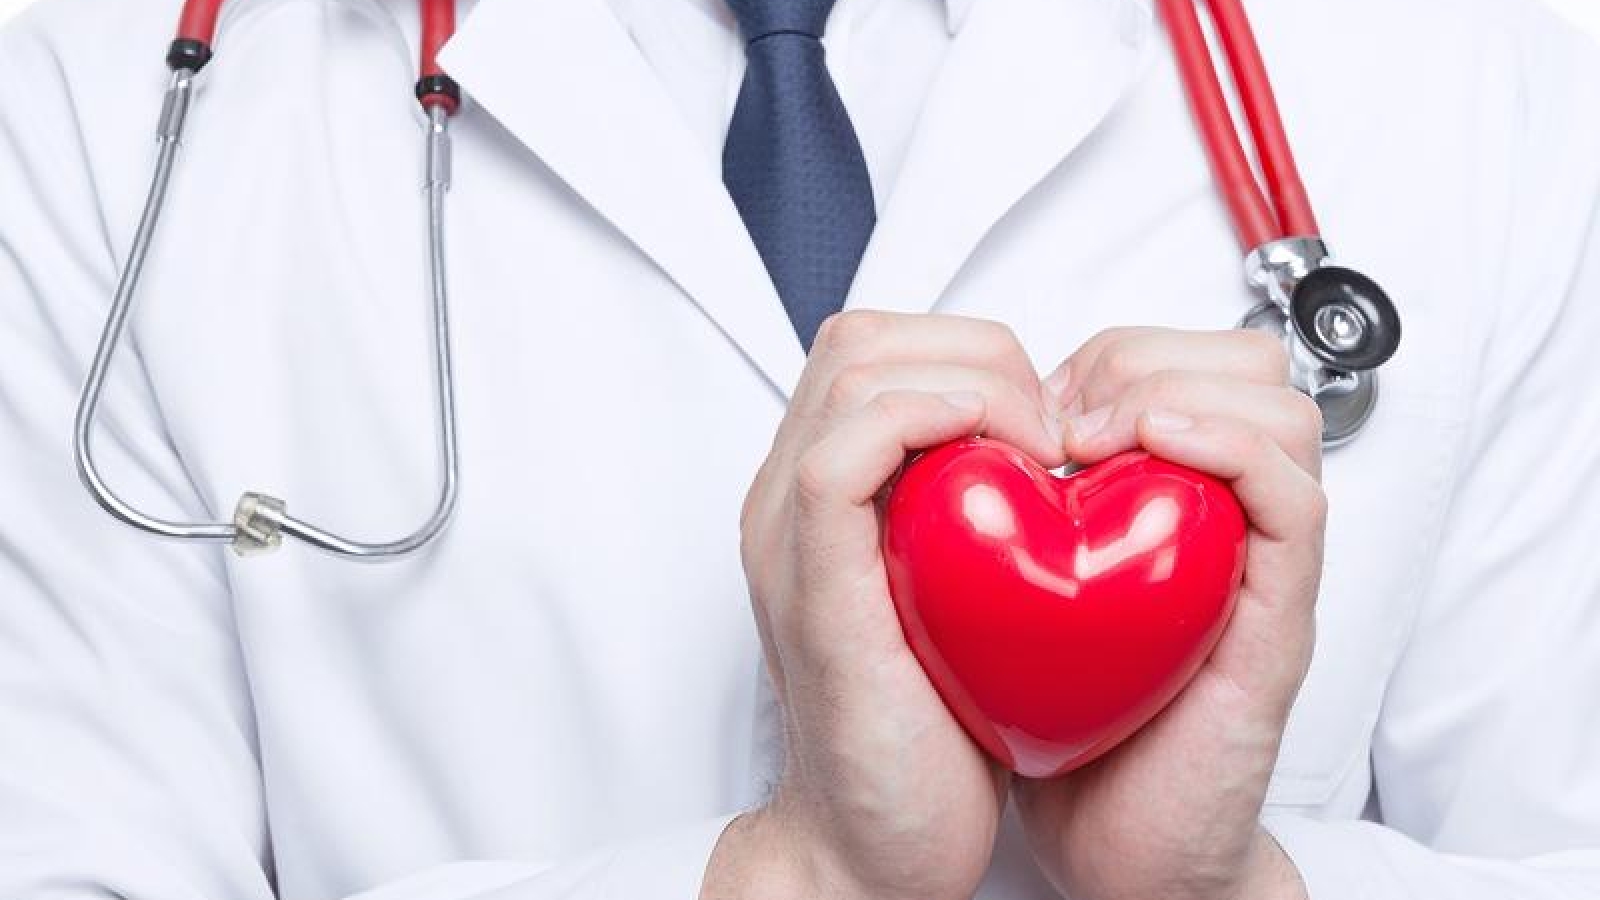 Cardiologi-Anmco-controllo-colesterolo-per-prevenzione-cardiovascolare.jpg